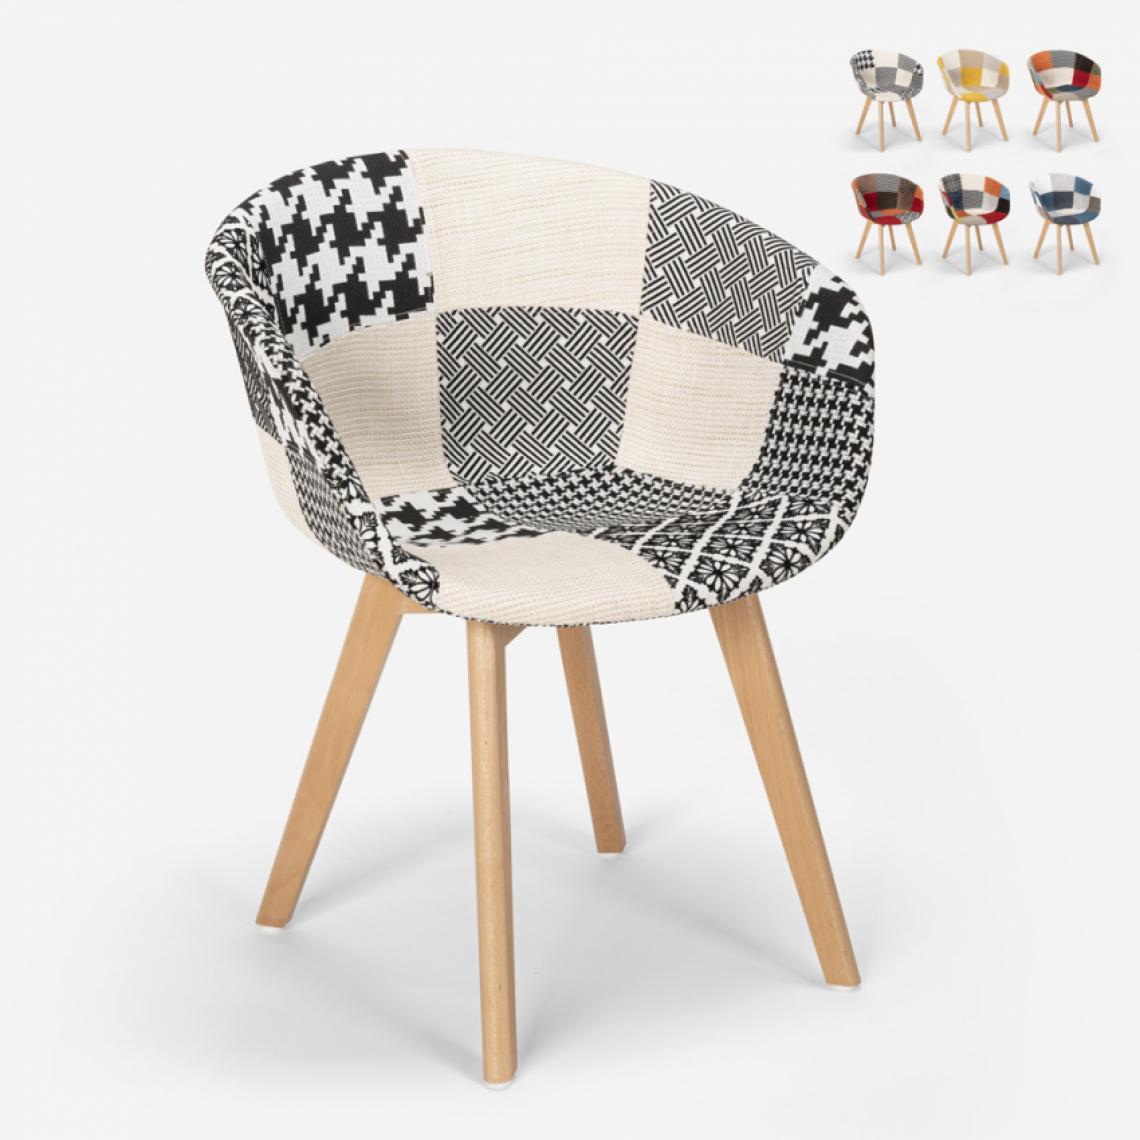 Ahd Amazing Home Design - Chaise patchwork design nordique en bois et tissu pour cuisine bar restaurant Pigeon, Couleur: Patchwork 5 - Chaises